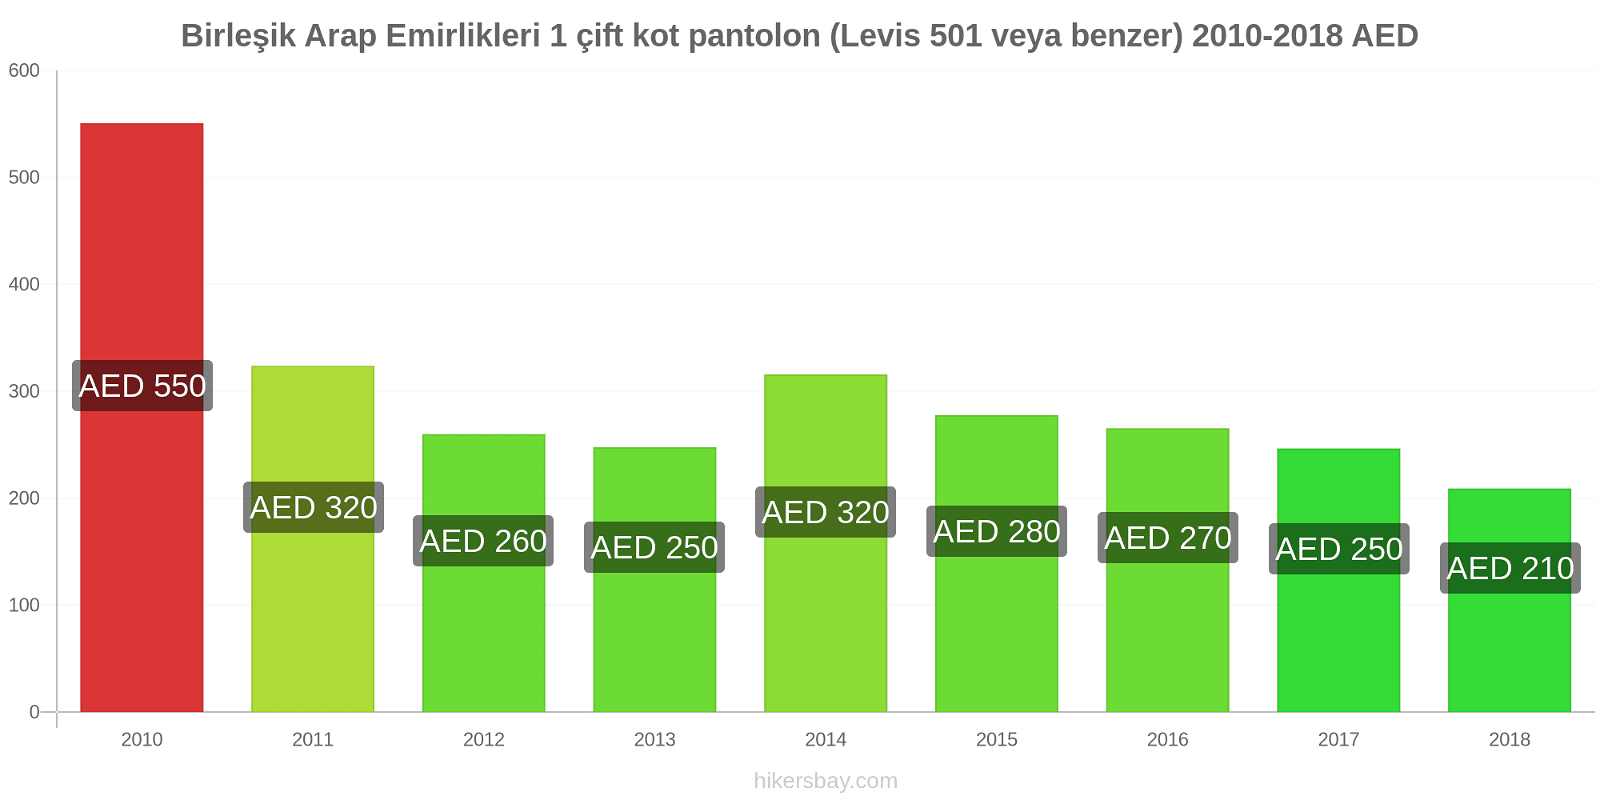 Birleşik Arap Emirlikleri fiyat değişiklikleri 1 çift kot pantolon (Levis 501 veya benzeri) hikersbay.com